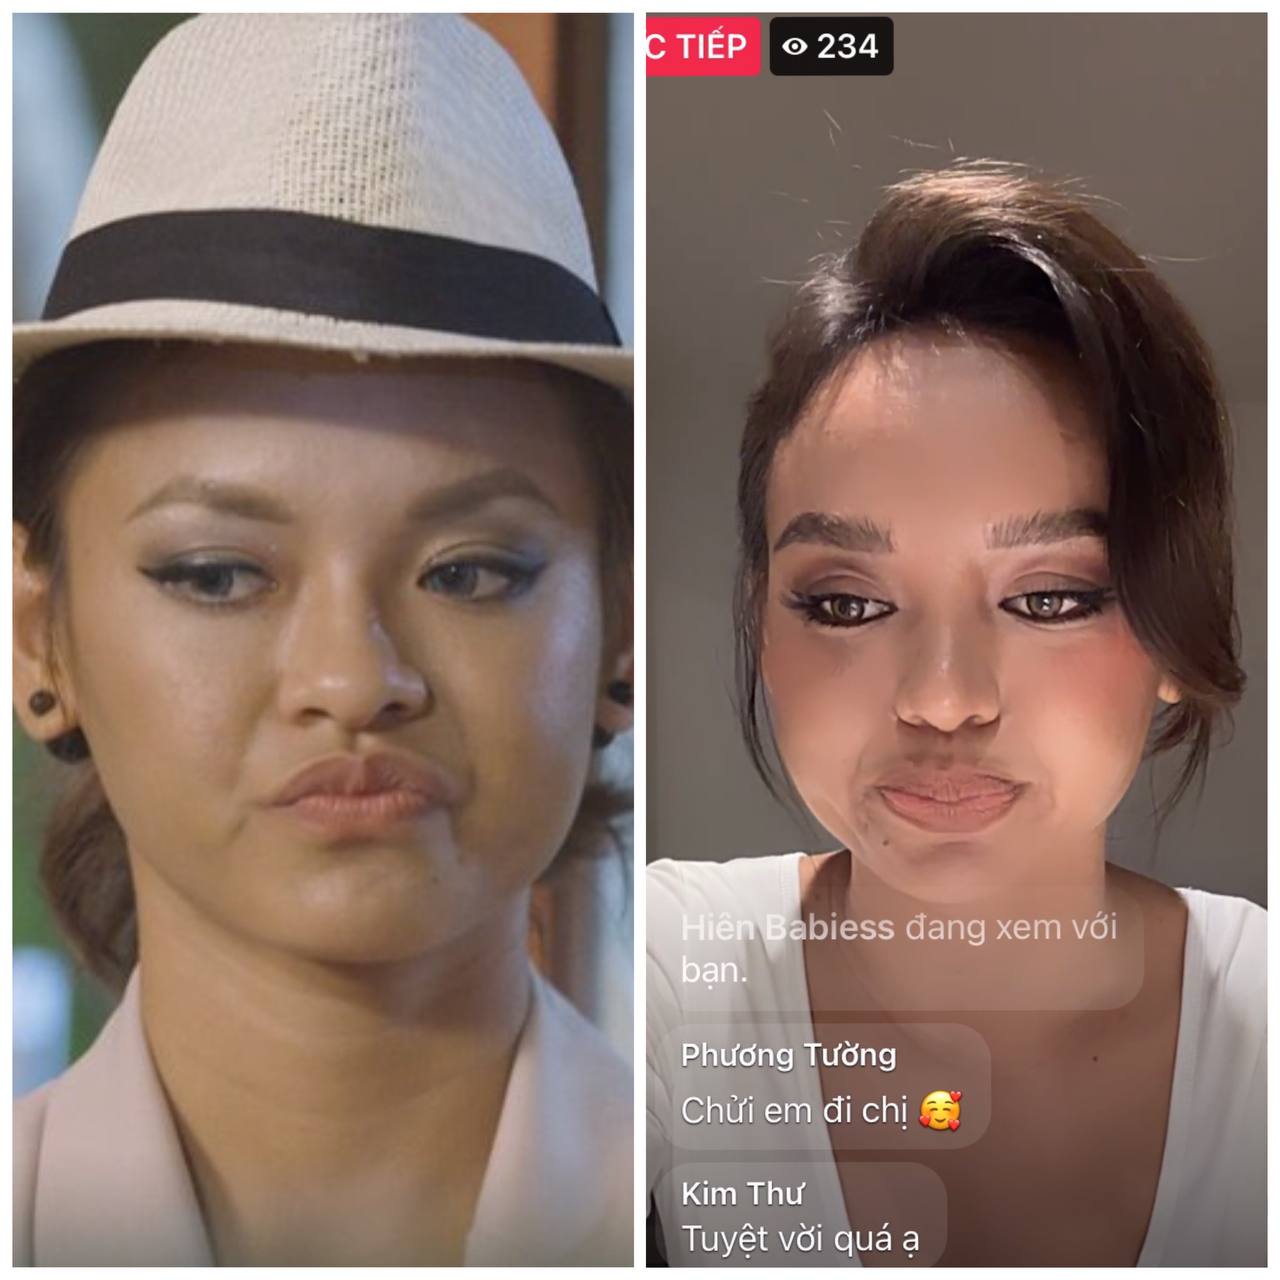 Hình ảnh so sánh chiếc mũi của Mai Ngô trước kia và trong livestream mới nhất thấy rõ sự khác biệt